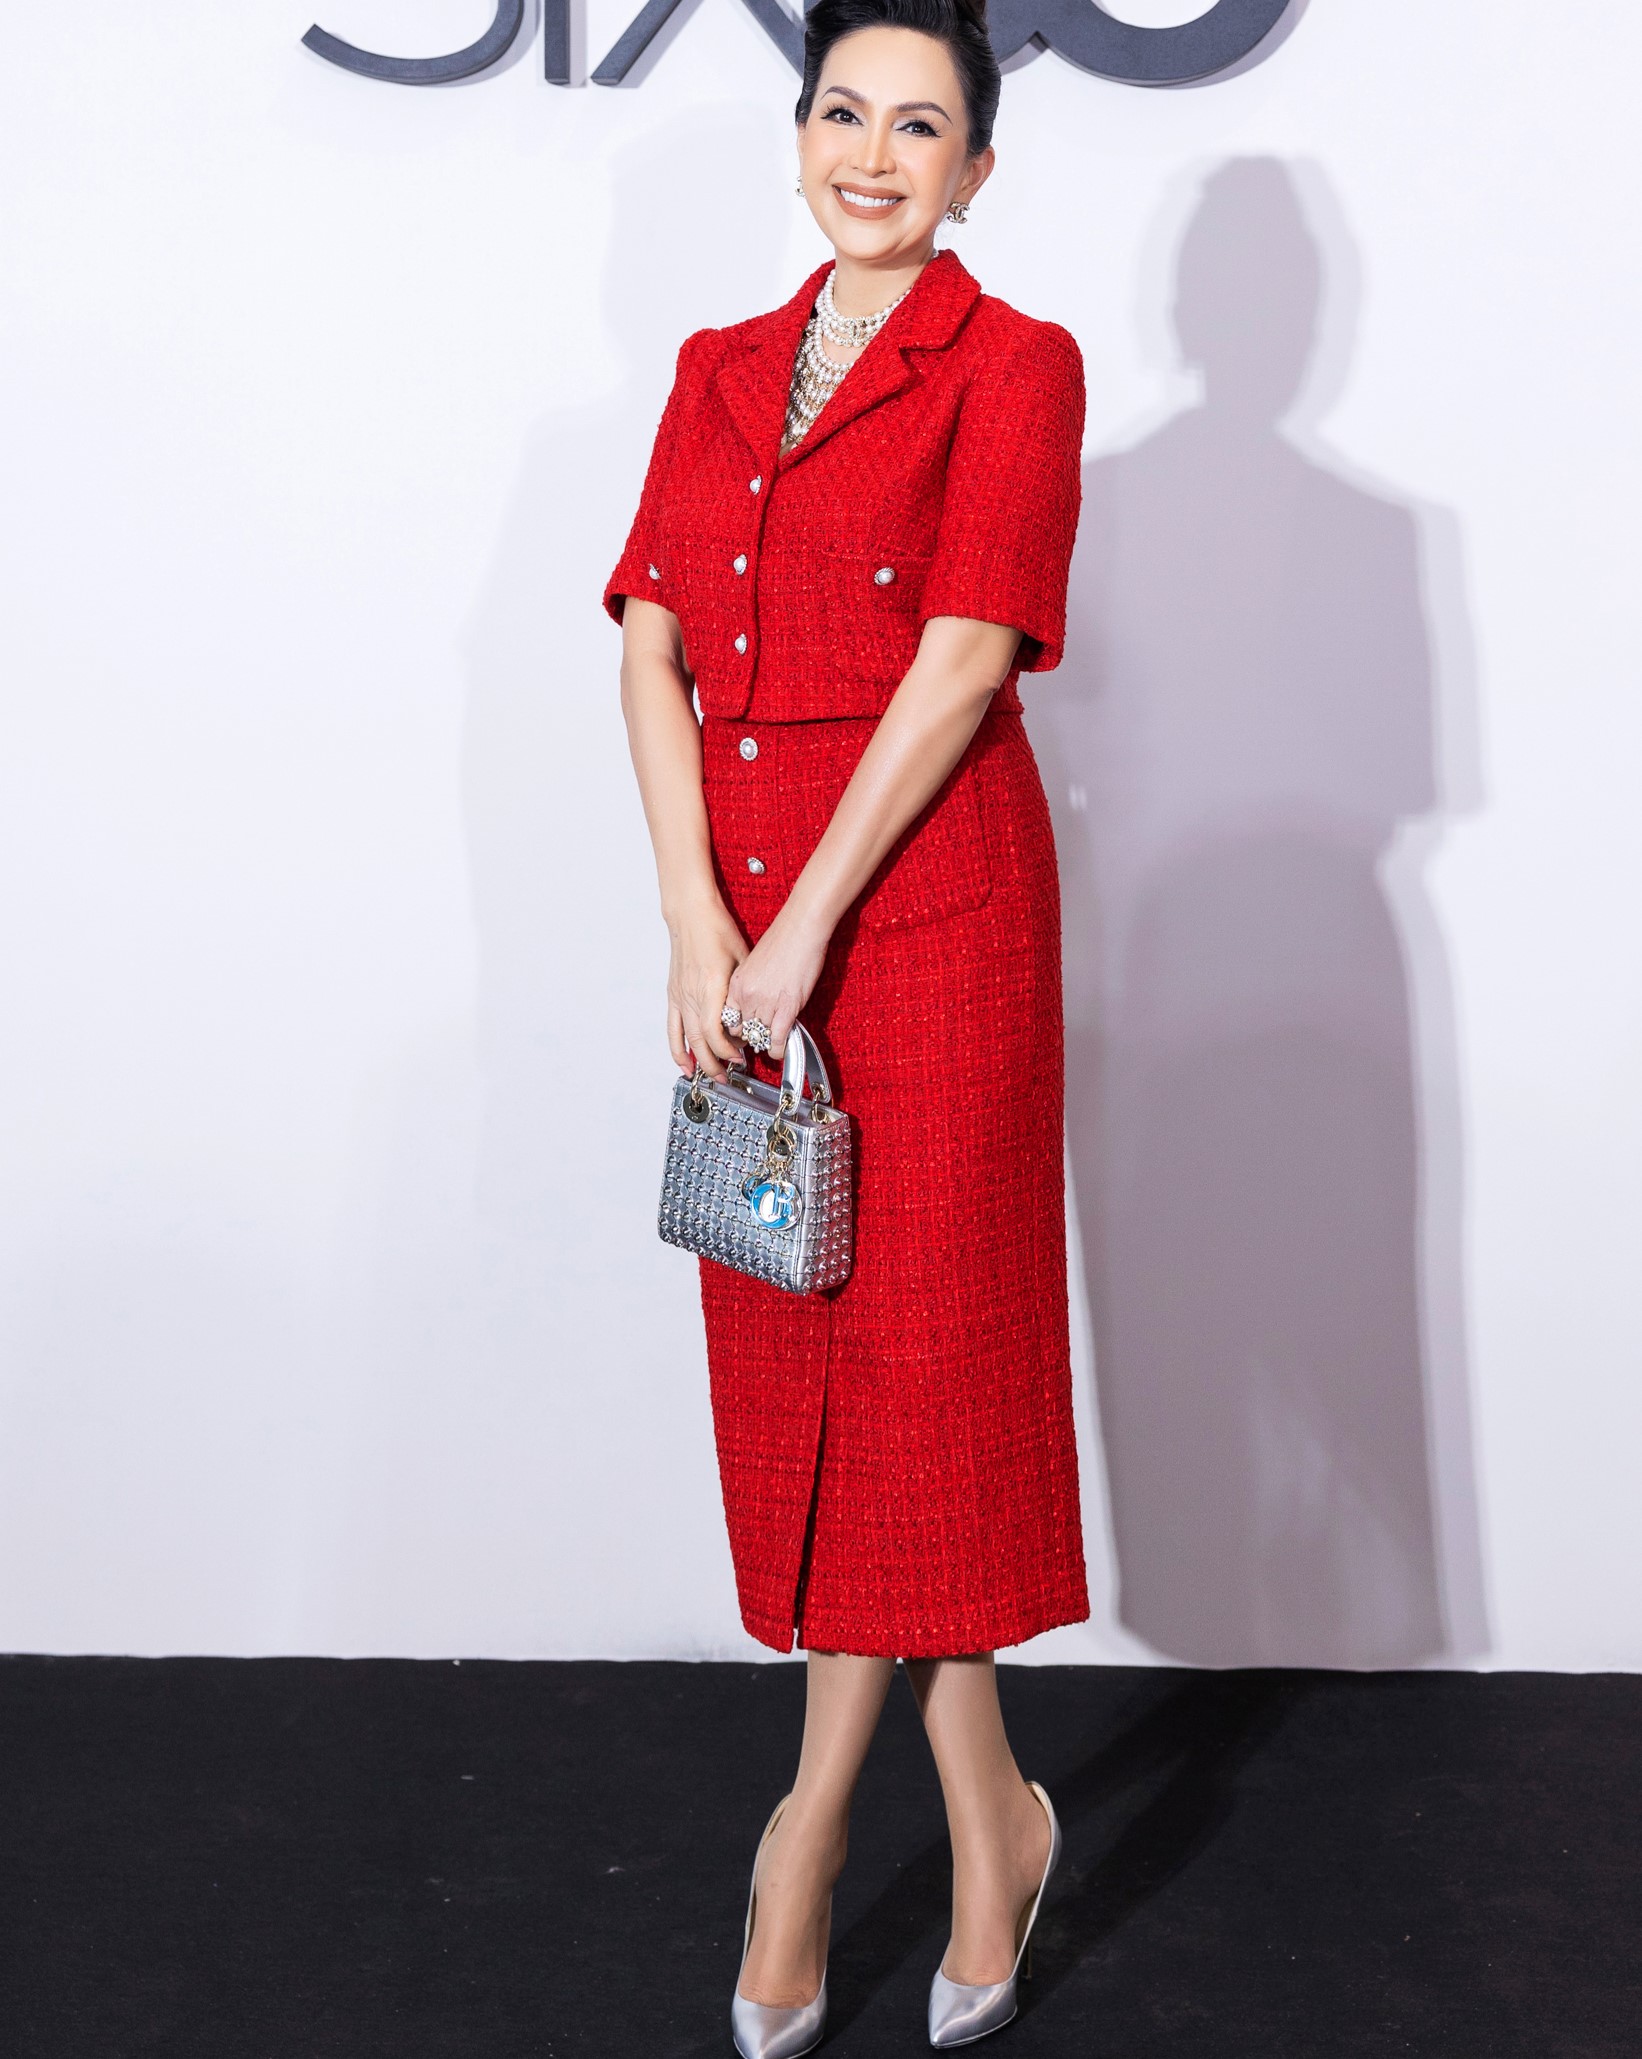 Bên cạnh Ngô Thanh Vân và Tăng Thanh Hà, nhiều sao nổi tiếng cũng đến tham dự show thời trang của NTK Đỗ Mạnh Cường. Nữ diễn viên Diễm My sang trọng trong bộ cánh vải tweed đỏ, phối cùng trang sức Chanel, túi xách Dior và giày WSL.